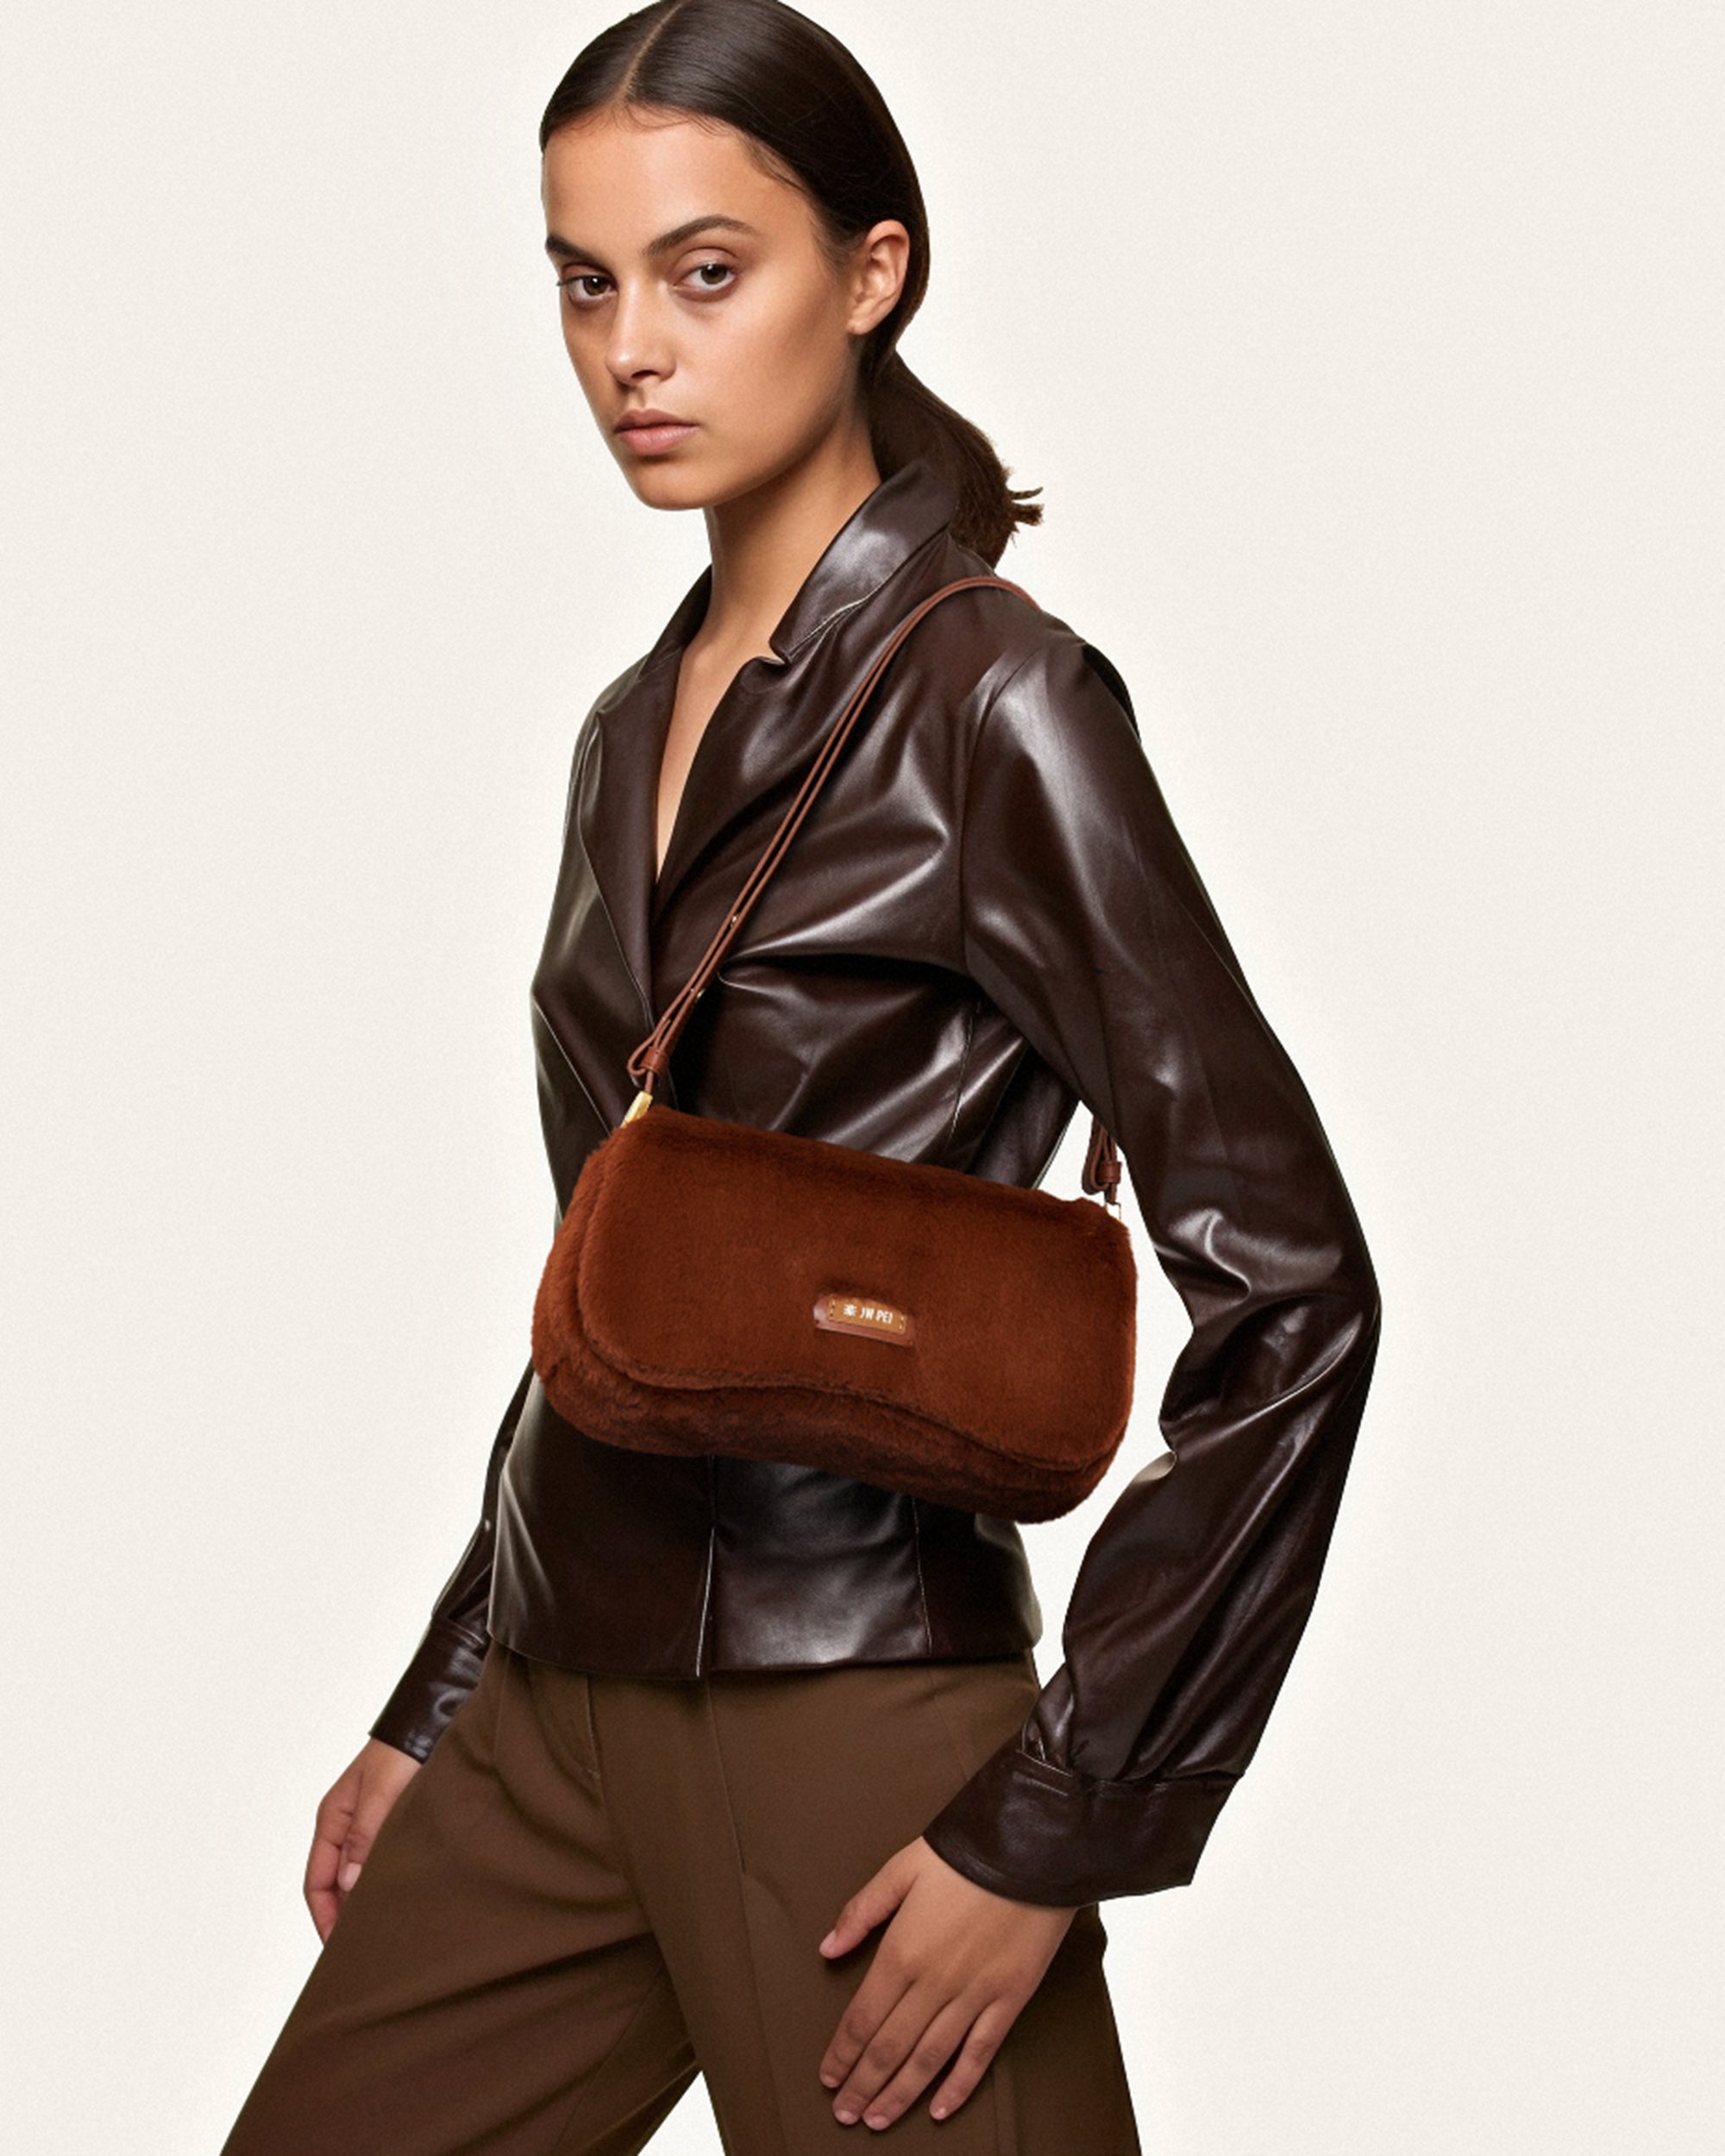 JW Pei Joy Faux Leather Shoulder Bag